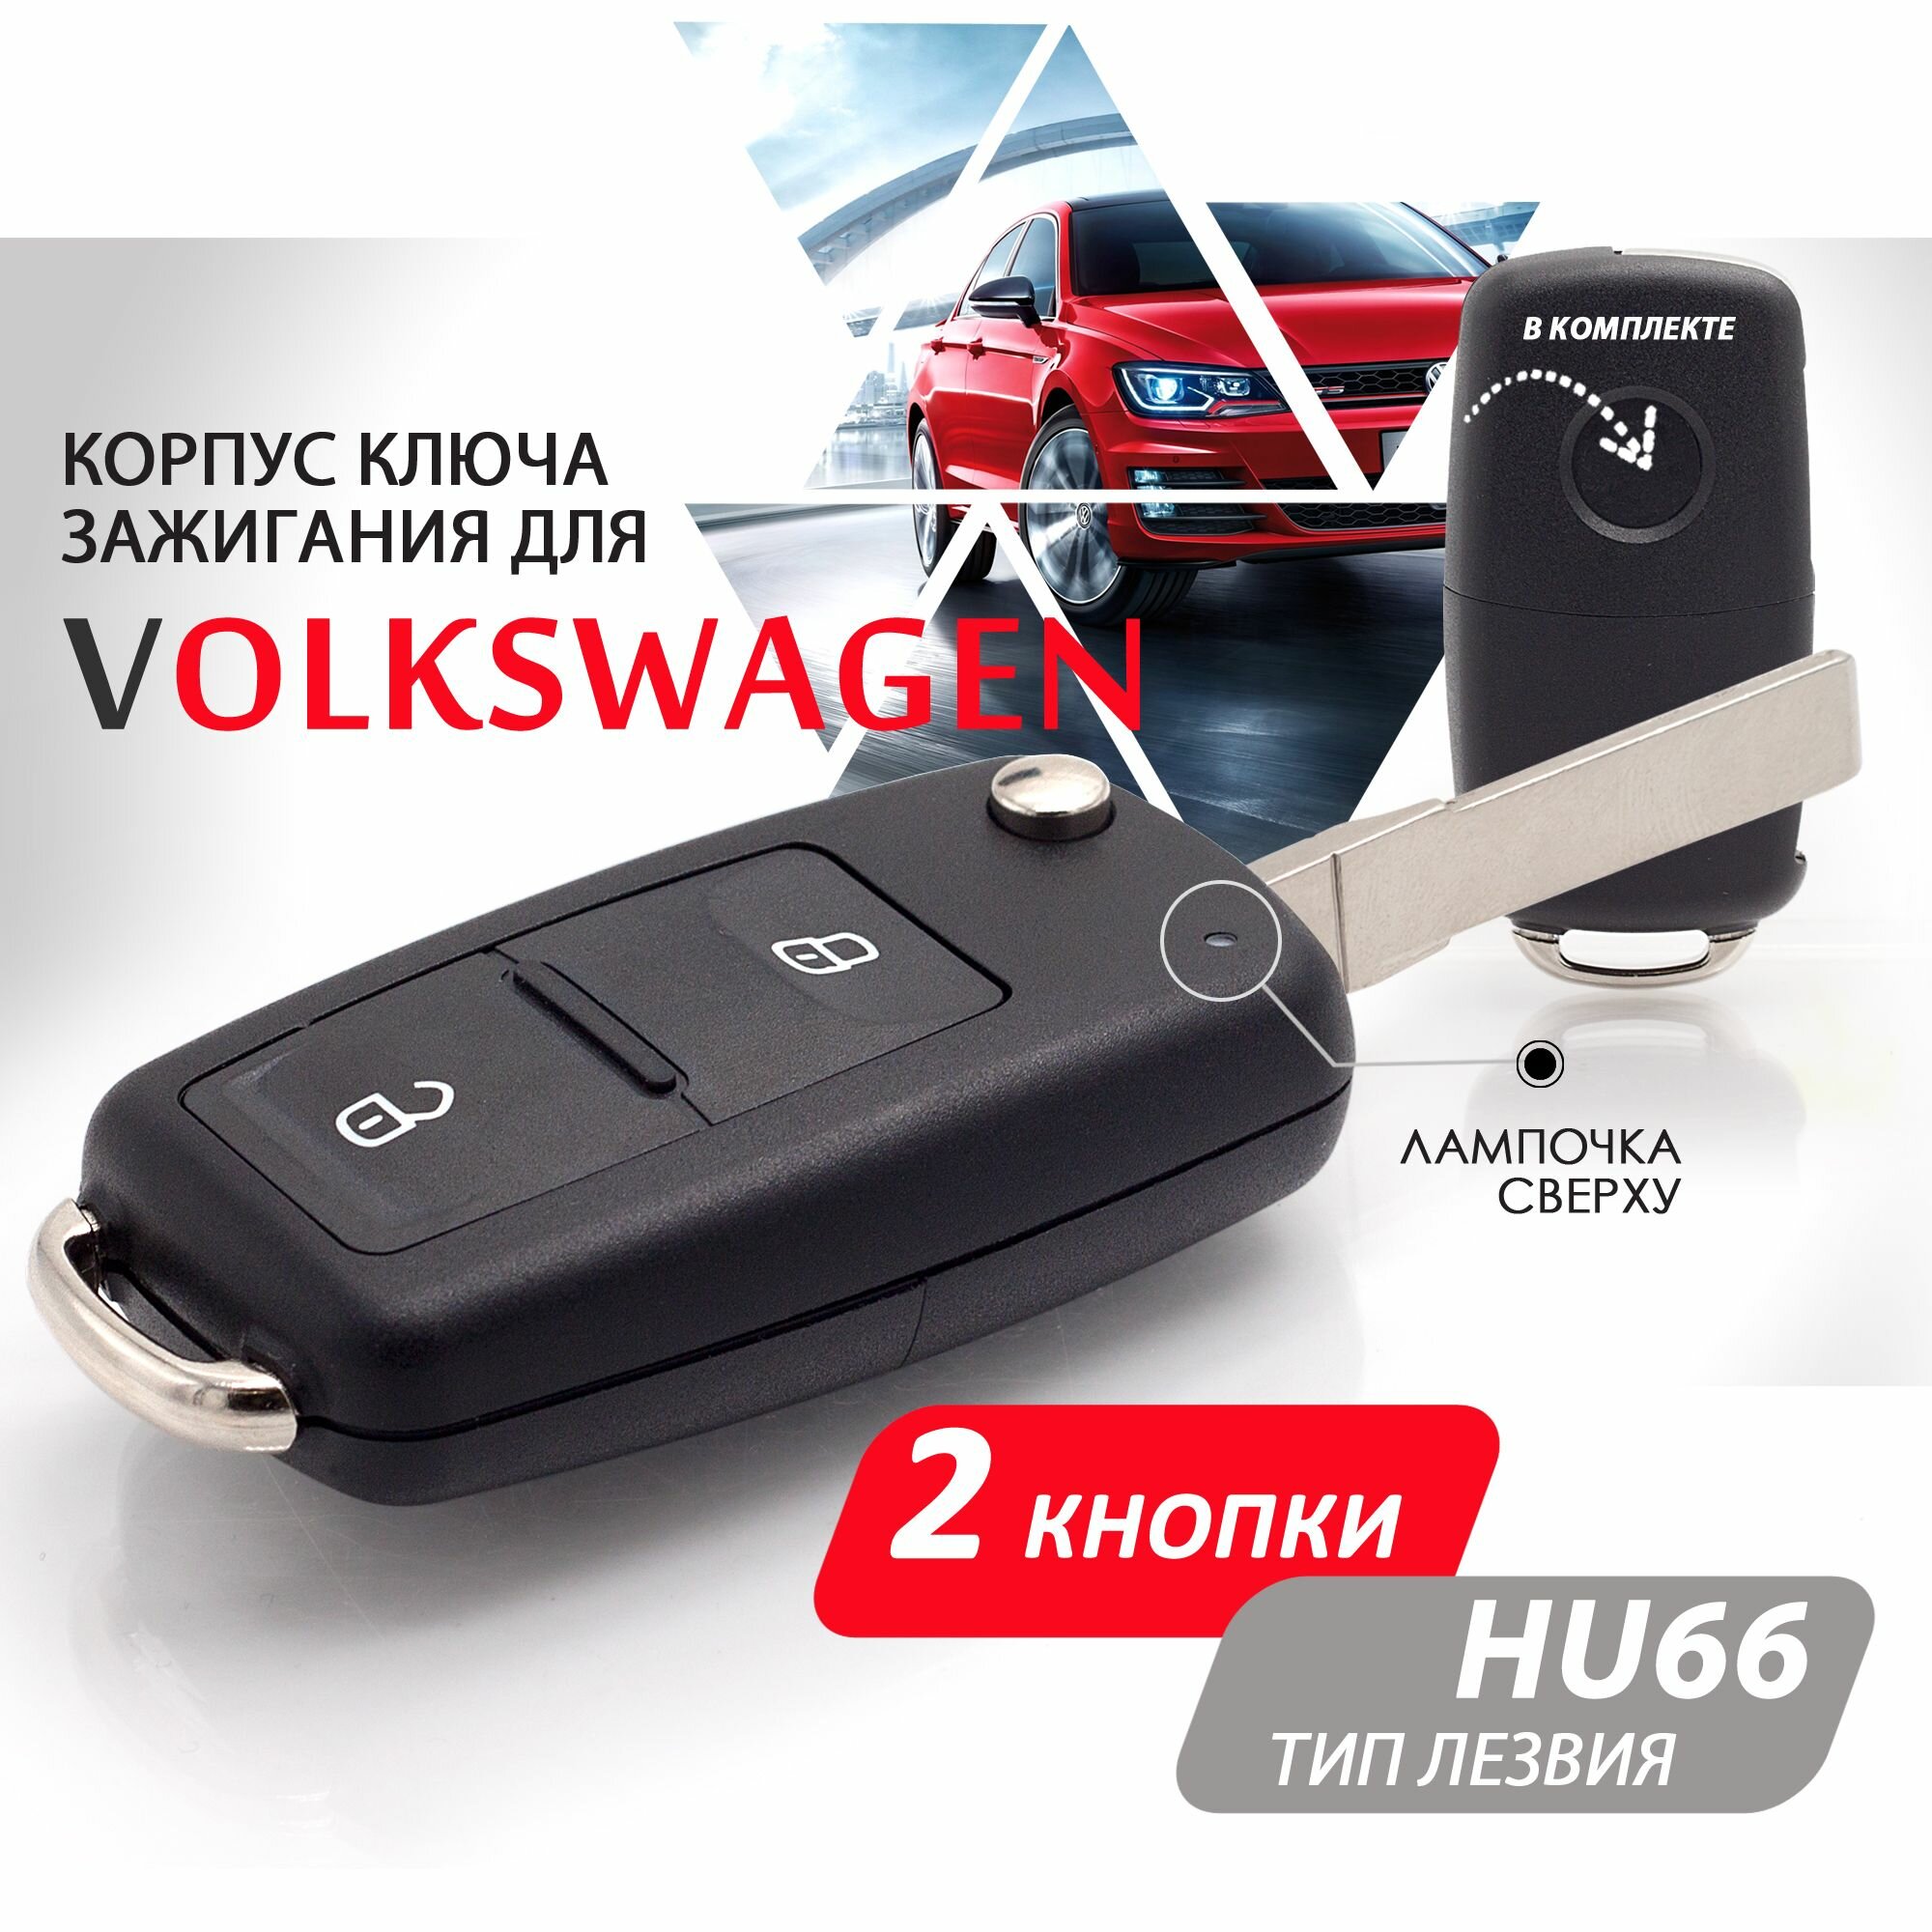 Корпус ключа зажигания для Volkswagen Polo Golf Passat Фольксваген Поло Гольф Пассат / Шкода Октавия / Сеат Ибица - 1 штука (2х кнопочный ключ лезвие HU66)